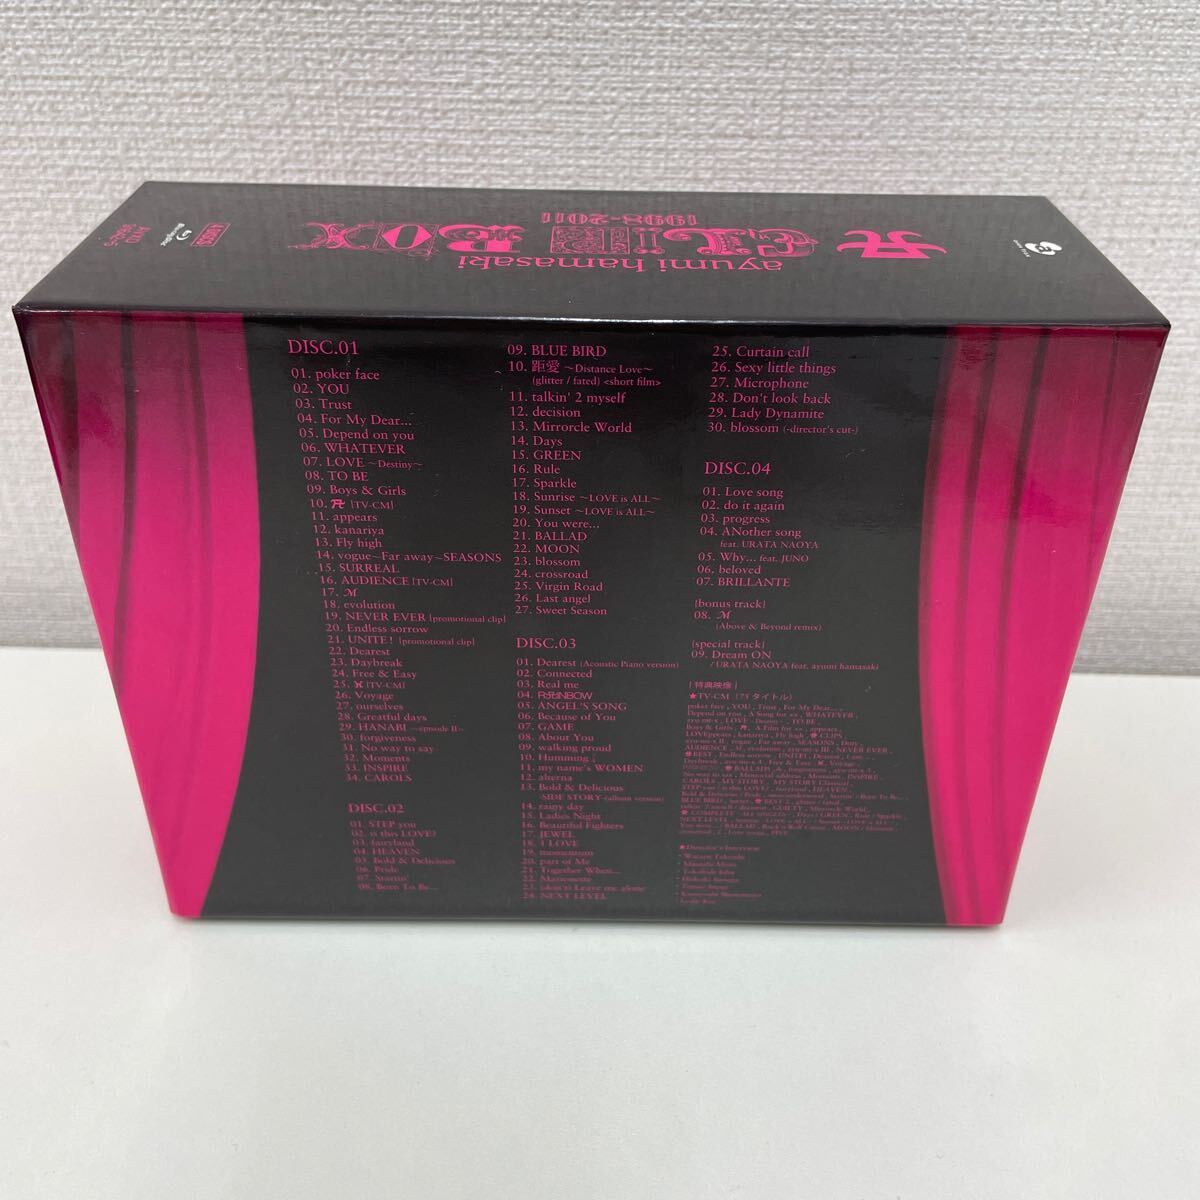 [1 иен старт ] Hamasaki Ayumi ayumi hamazaki A CLIP BOX 1998-2011 Blu-ray4 листов комплект 